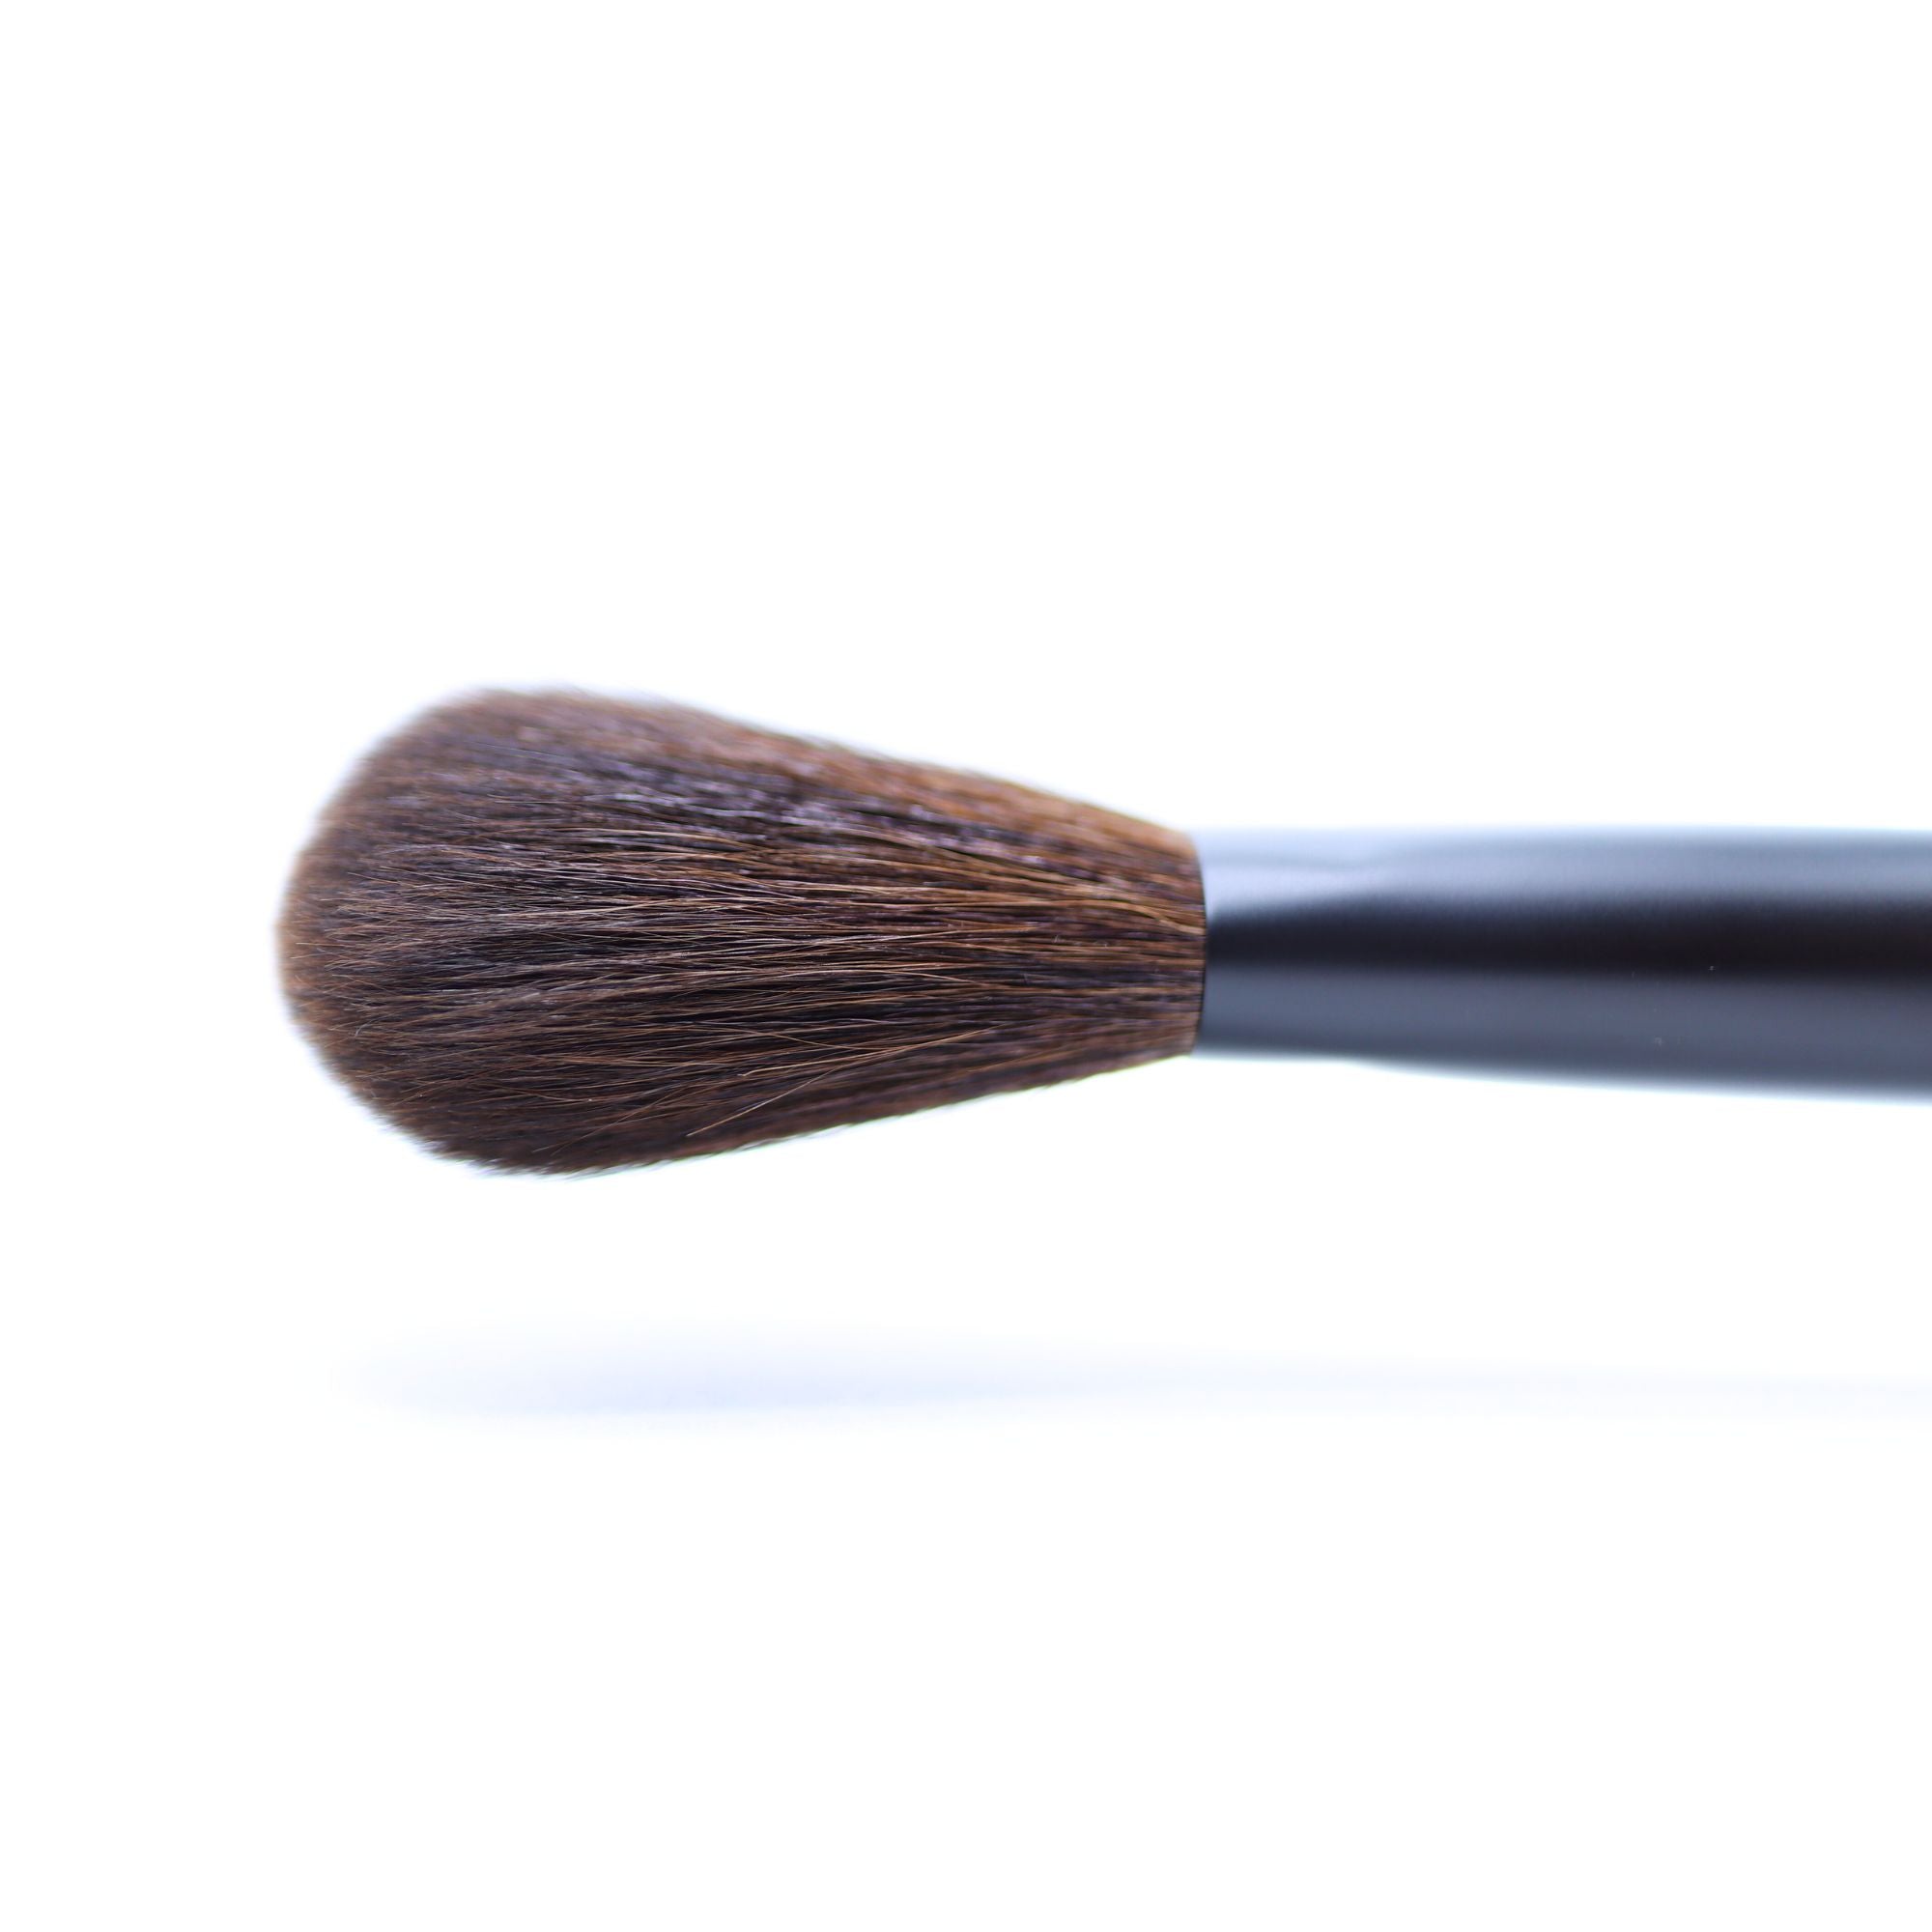 Tauhaus EH-01 Powder Brush, Ode Series - Fude Beauty, Japanese Makeup Brushes